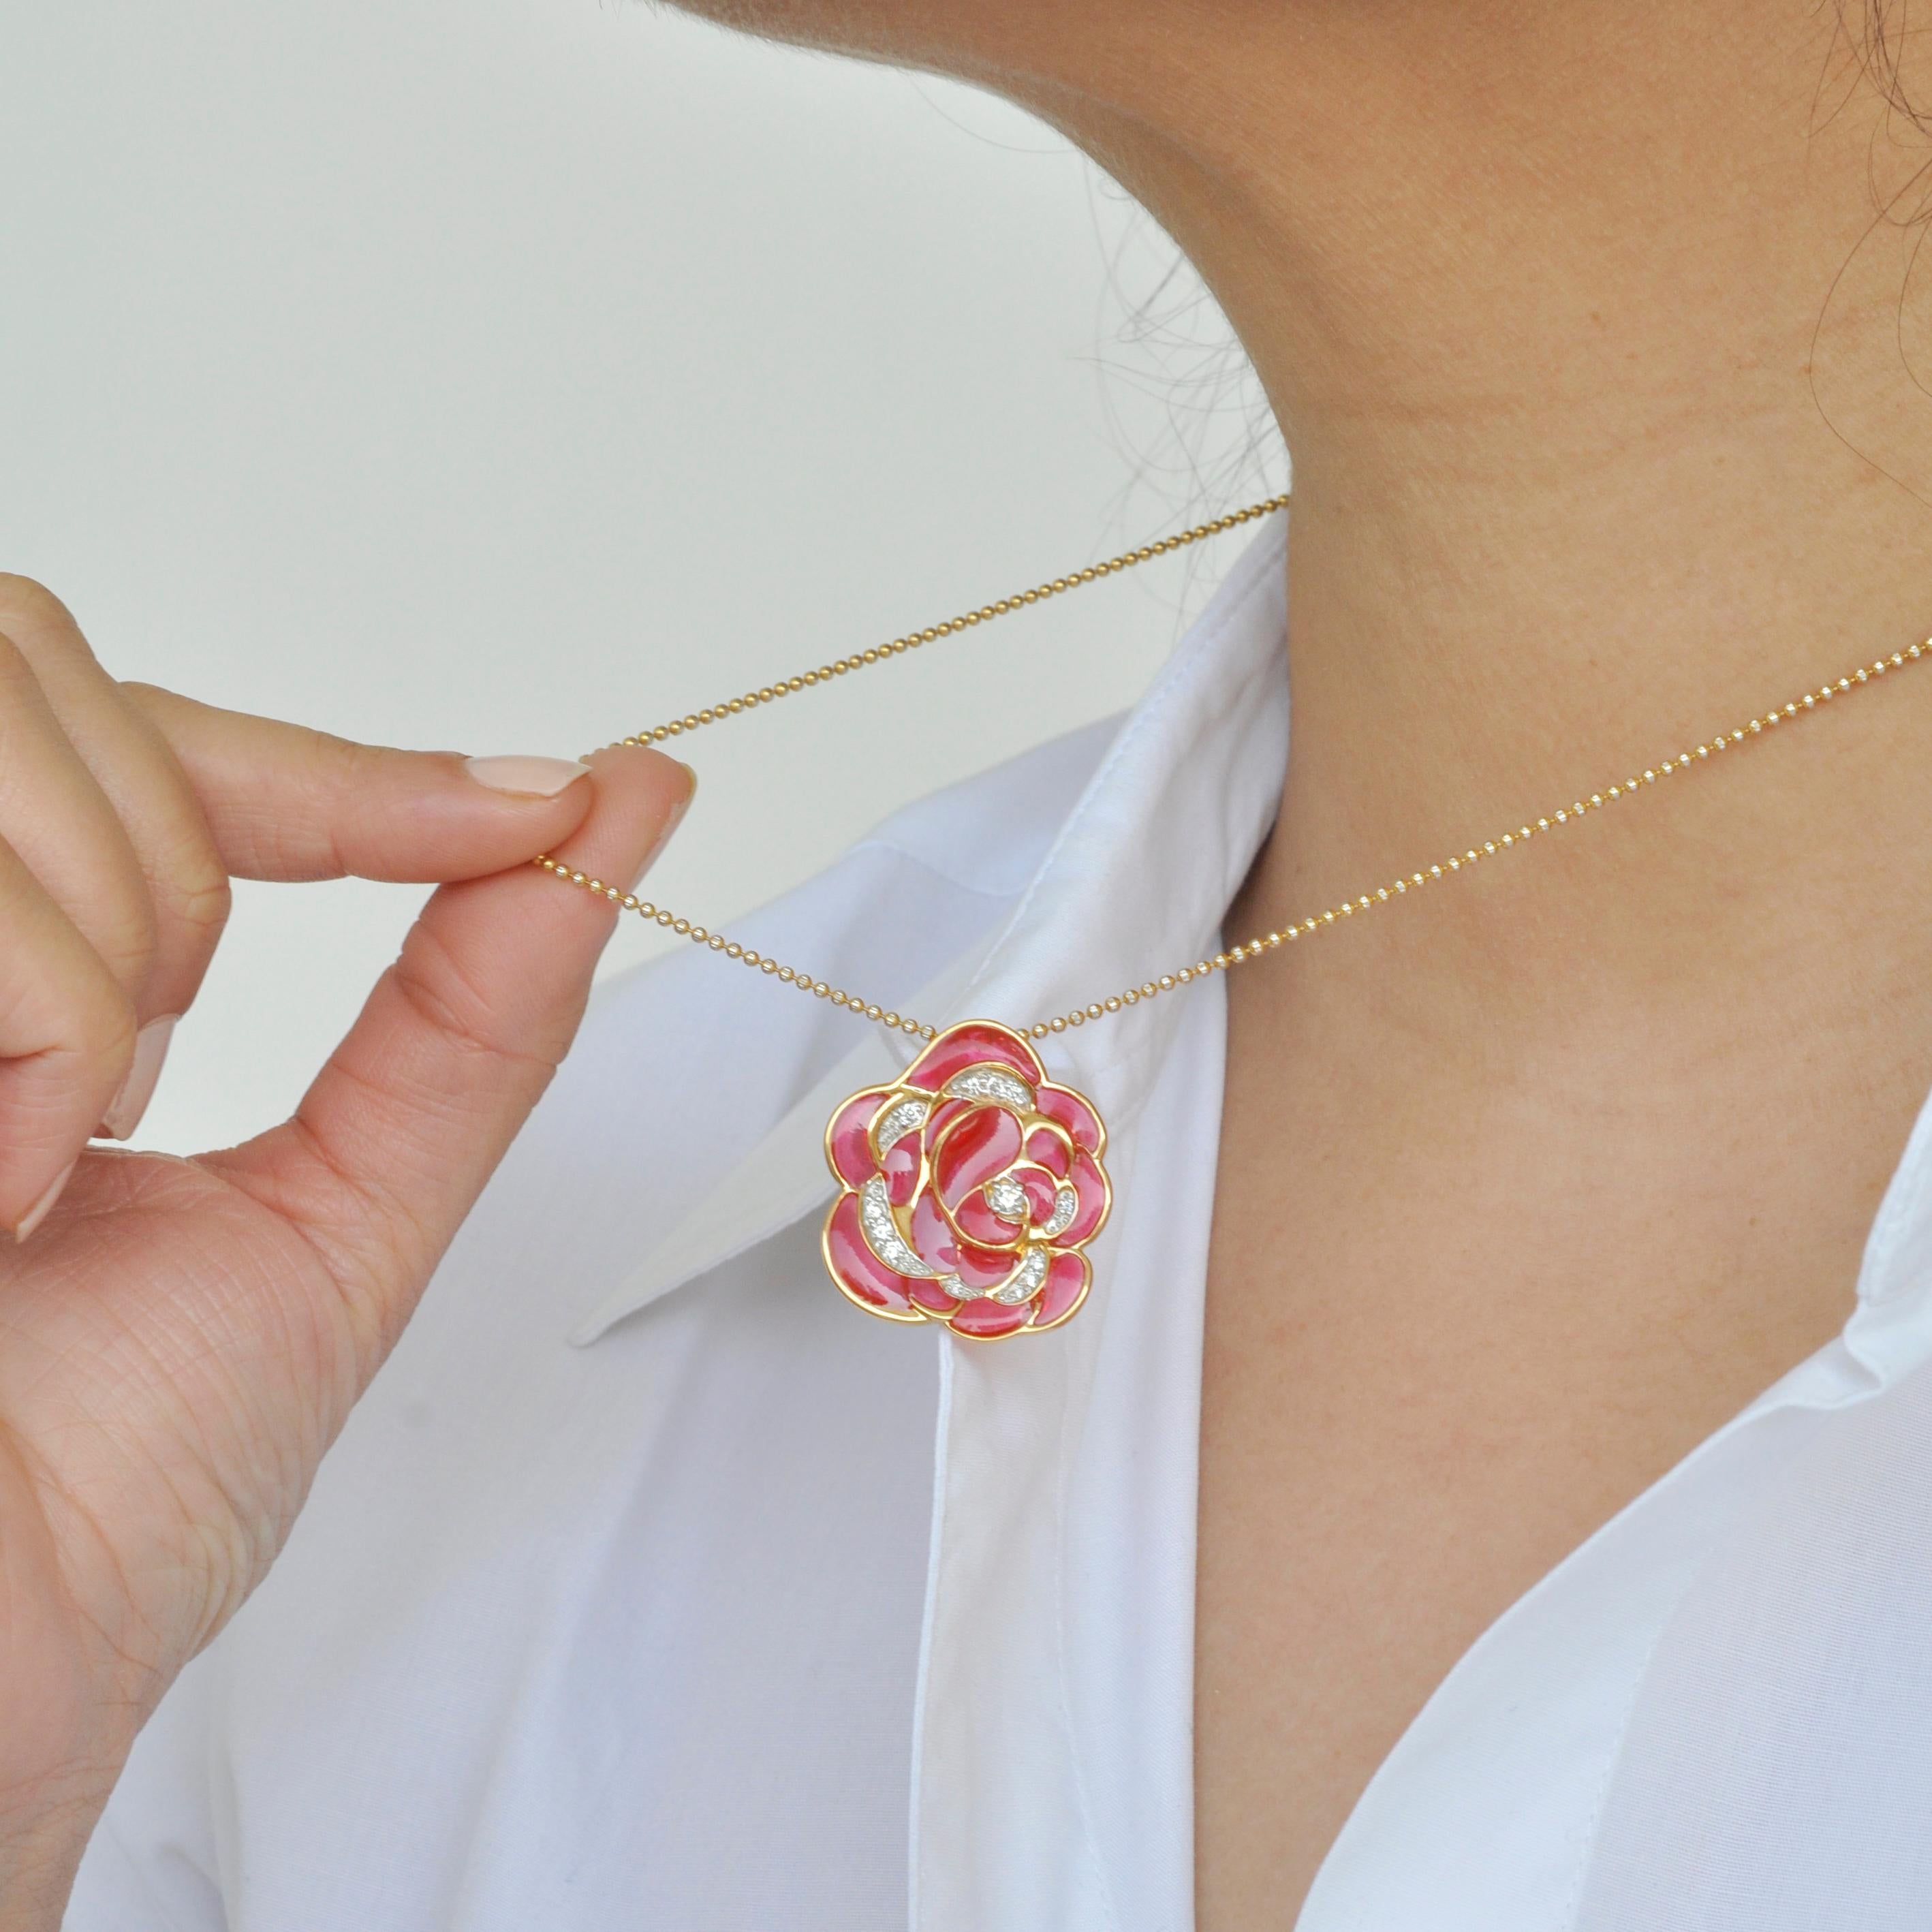 Contemporary 18 Karat Gold Pink Enamel Plique-a-Jour Rose Pendant Necklace For Sale